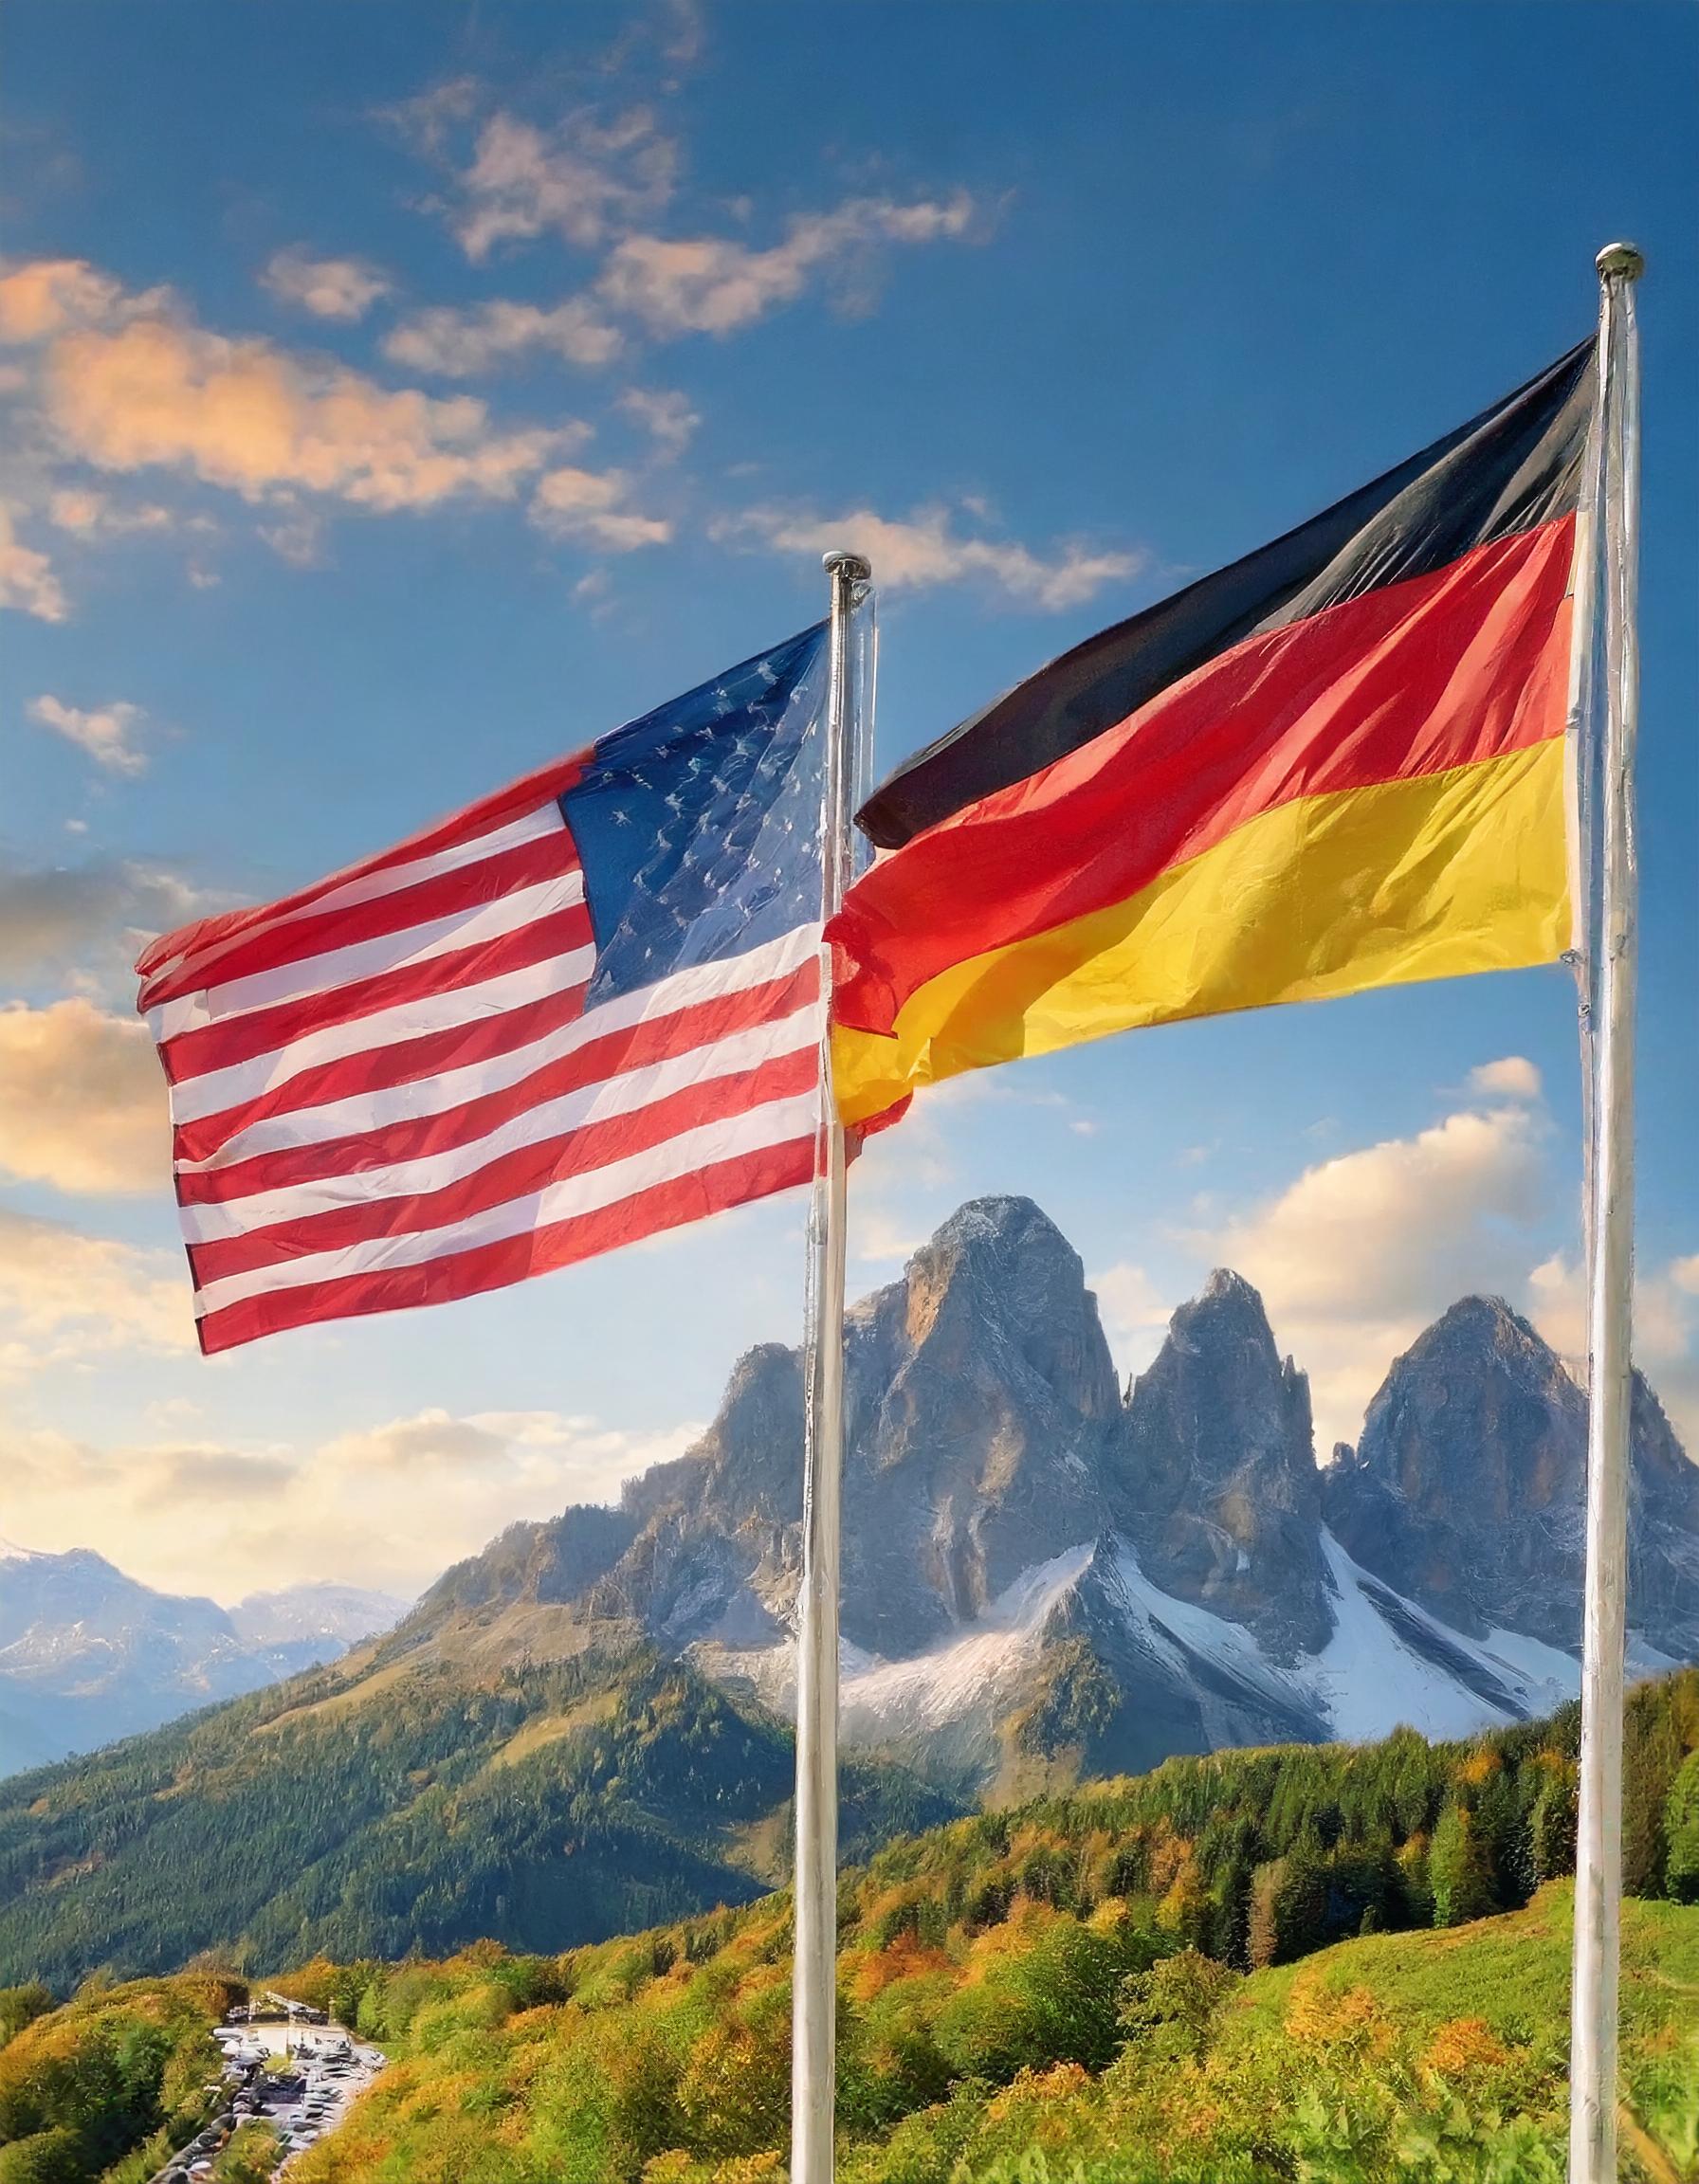 Firefly Eine Deutsche Flagge und eine Amerikanische Flagge vor blauen Himmel. Keine Menschen, nur di